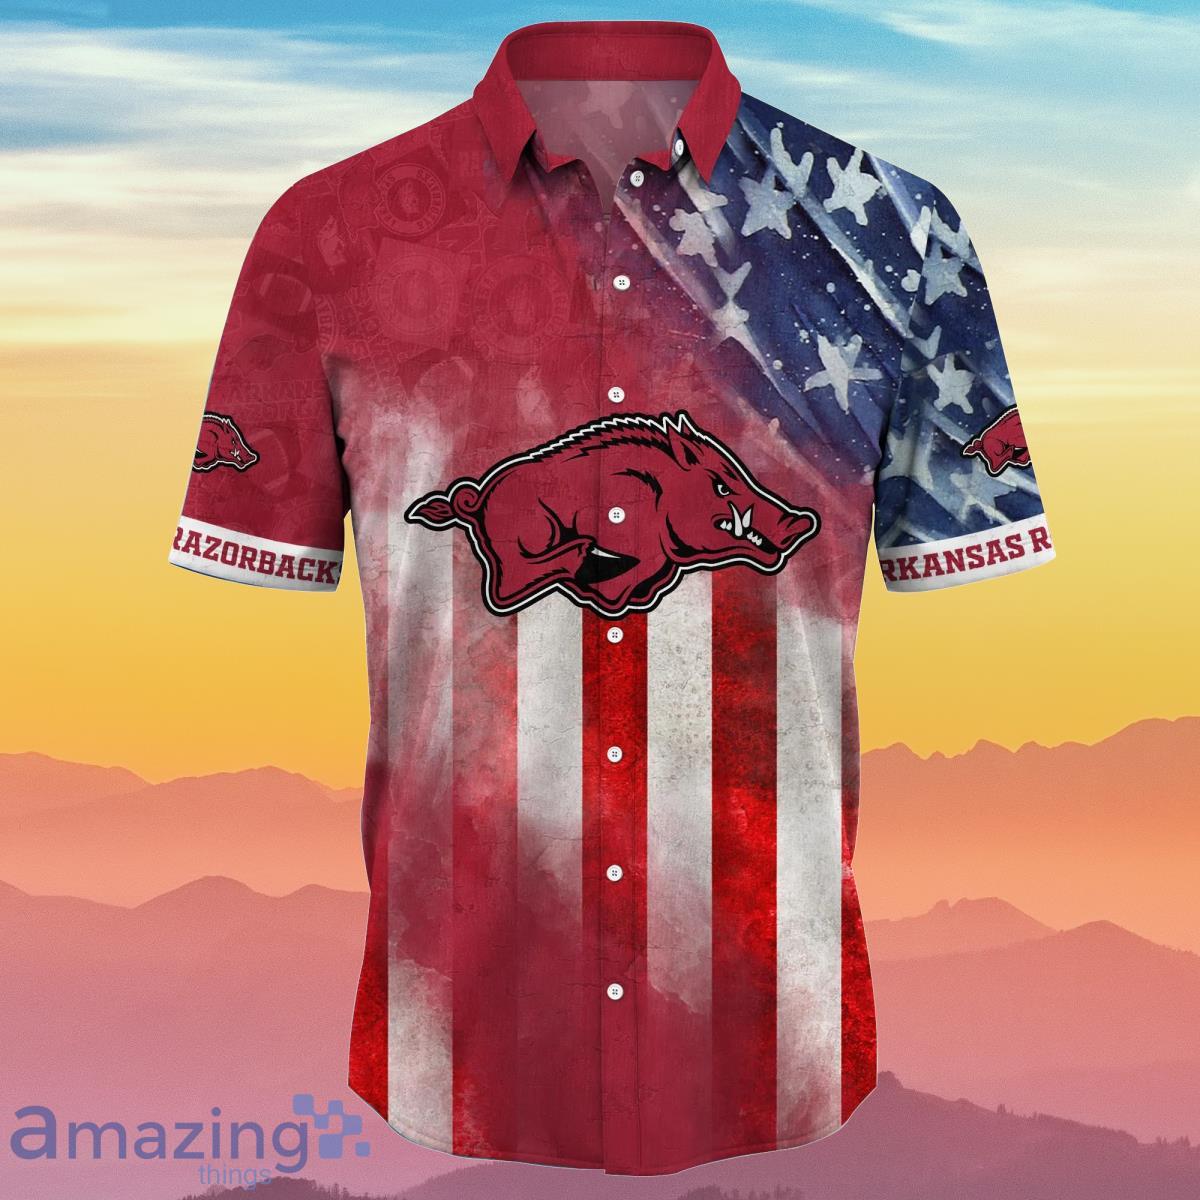 Arkansas Razorbacks NCAA2 Hawaiian Shirt Happy Independence Day Special Gift For Fans Product Photo 2